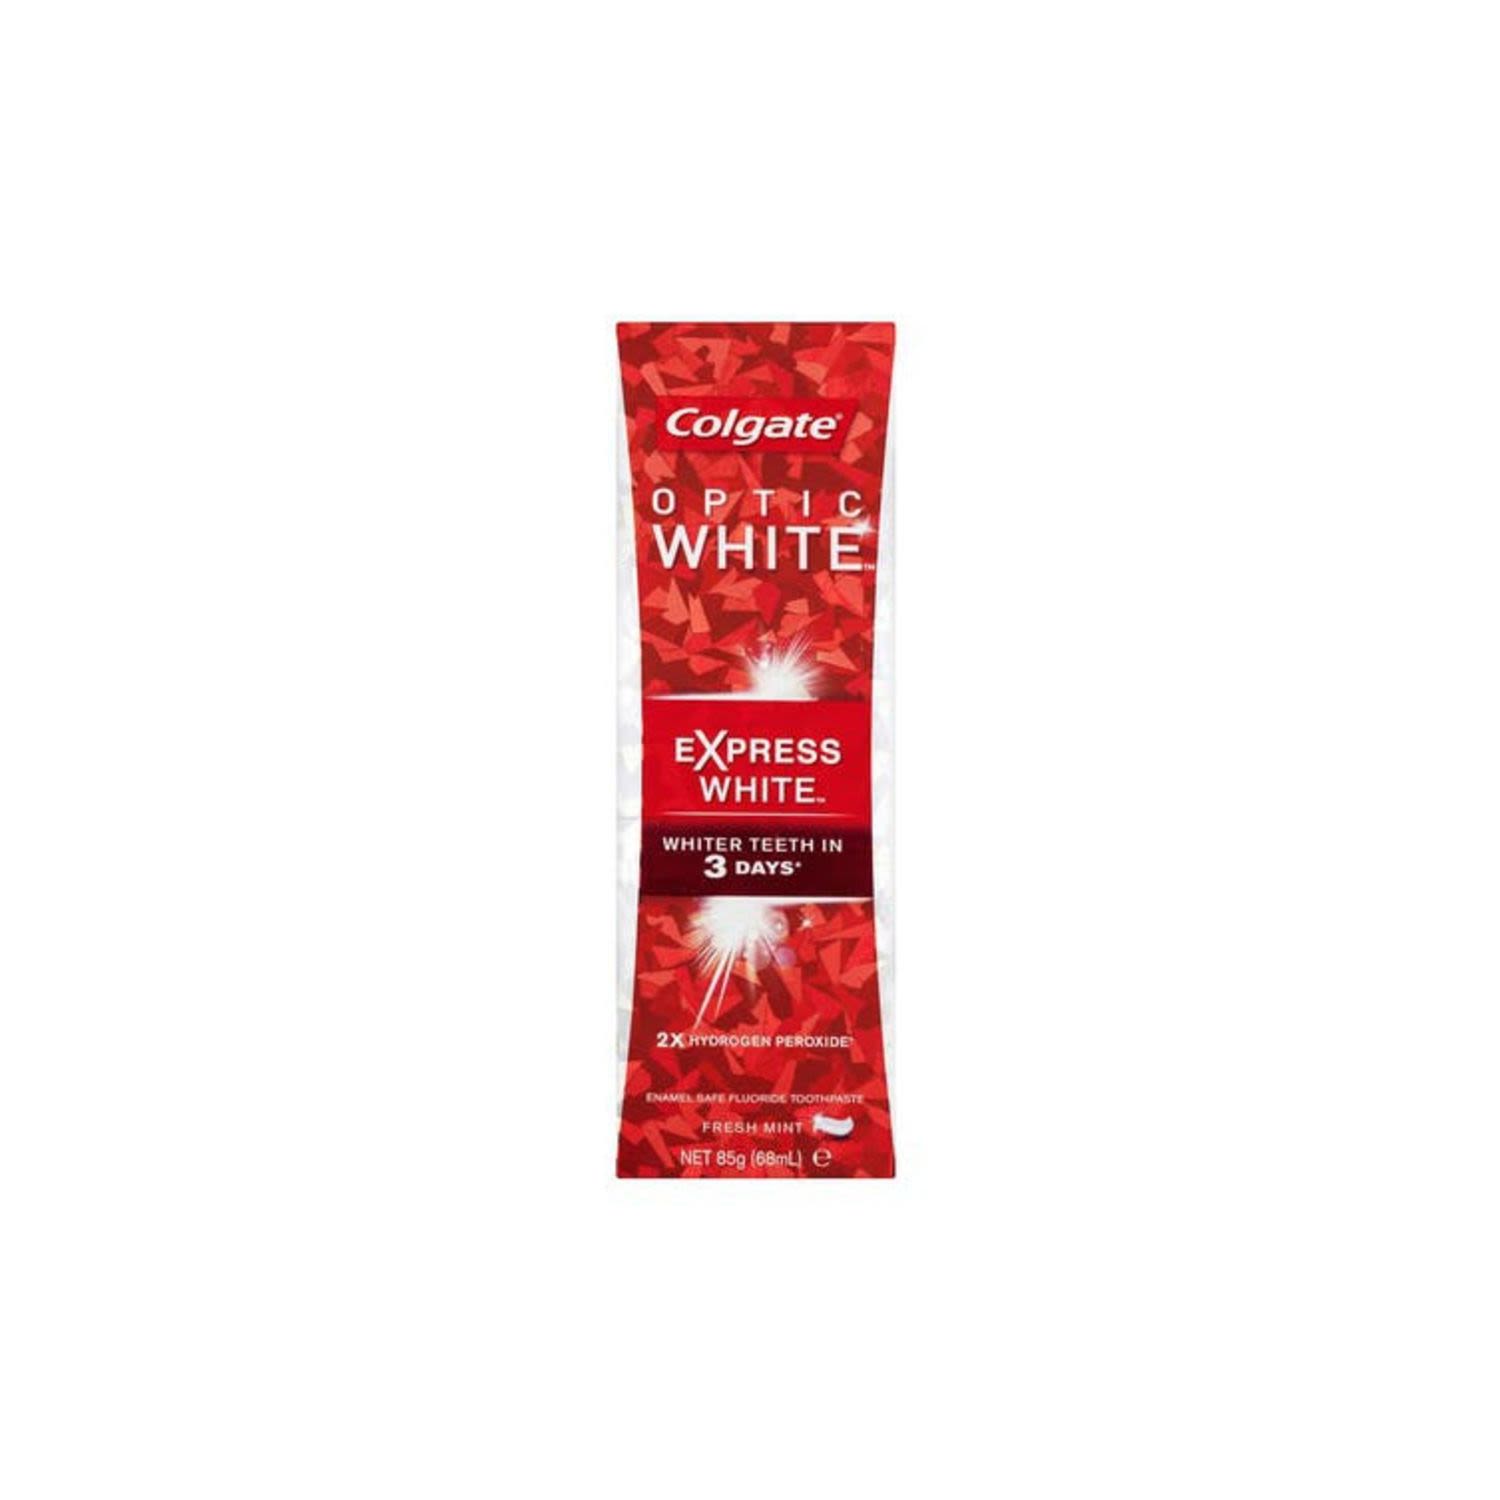 Colgate Optic White Express White Toothpaste, 85 Gram